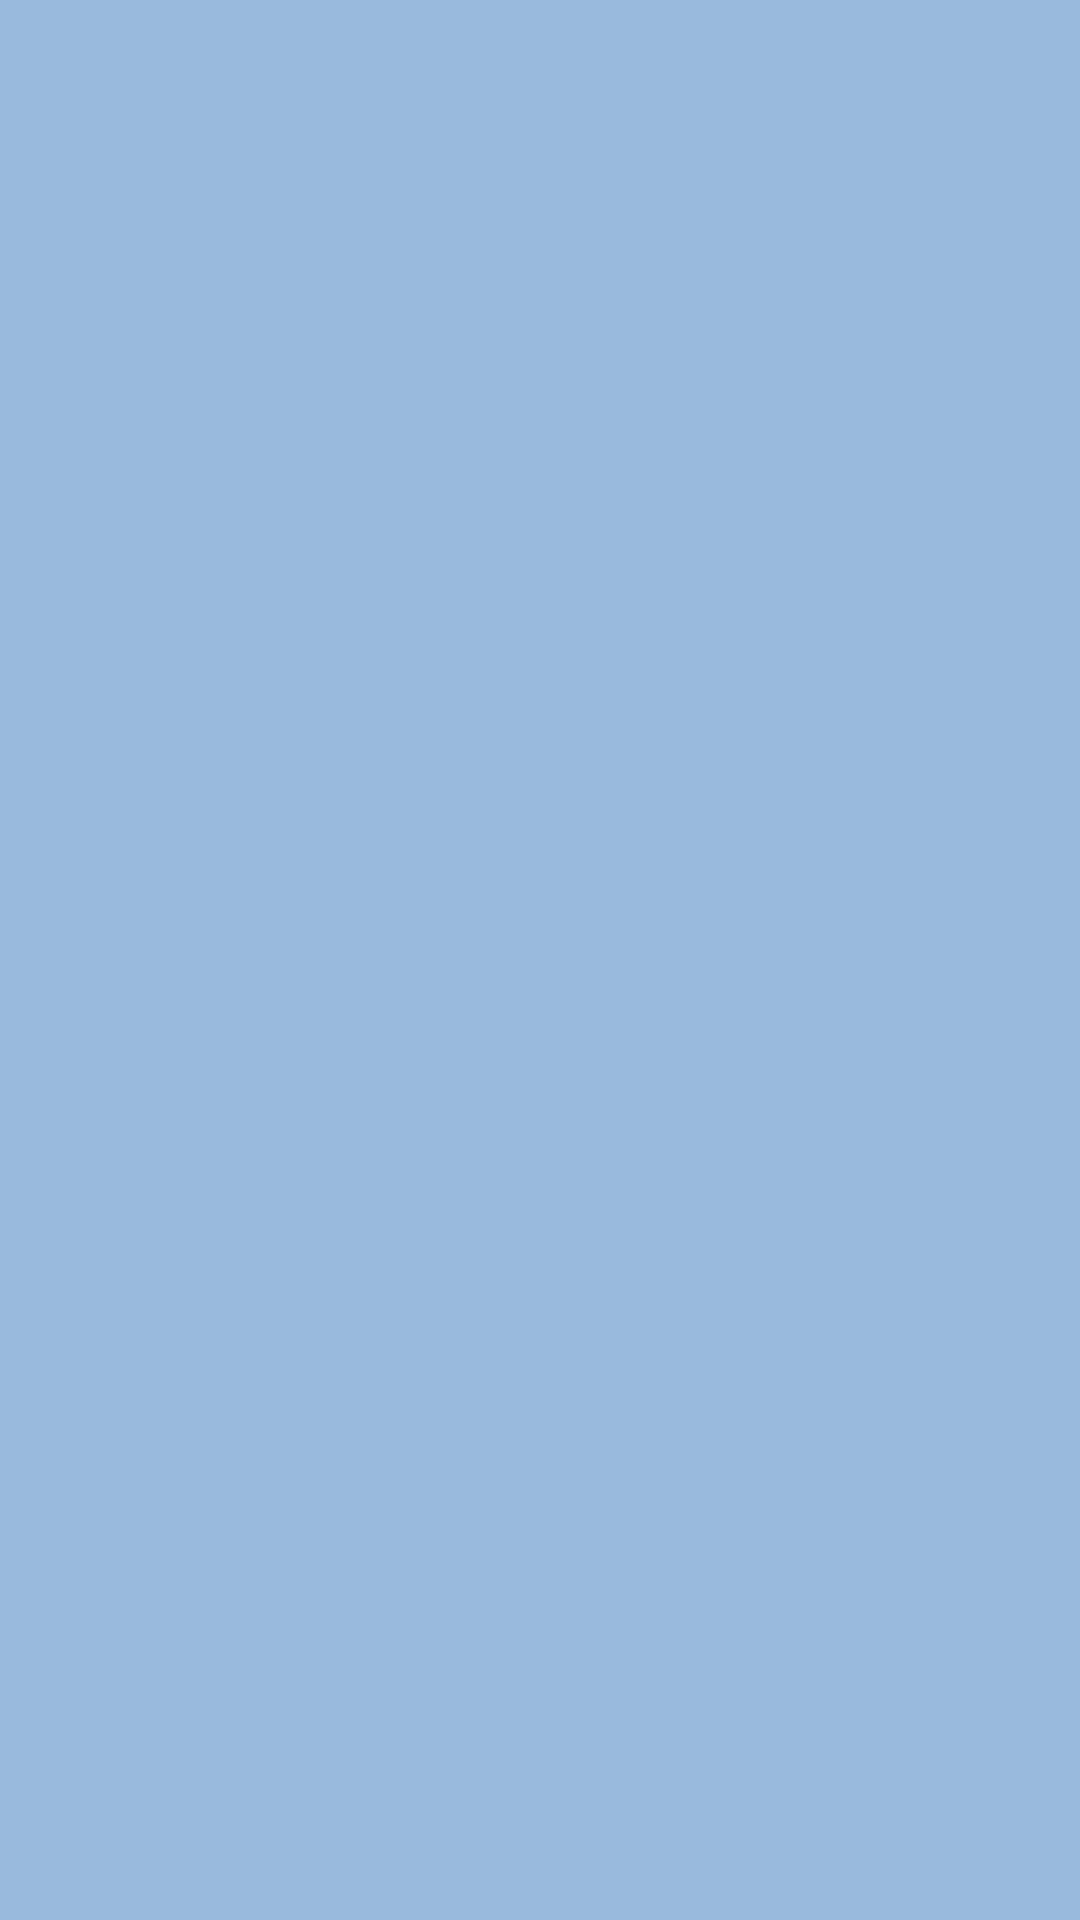 Màu xanh Carolina độ phân giải cao cho màn hình nền: Màu xanh Carolina là một trong những gam màu đặc trưng của bầu trời và biển cả. Với độ phân giải cao, màn hình nền màu xanh Carolina sẽ giúp cho bạn cảm nhận được sự thư giãn và thoải mái tuyệt đối. Hãy sử dụng ngay hình nền màu xanh Carolina và tránh xa căng thẳng mỗi ngày!